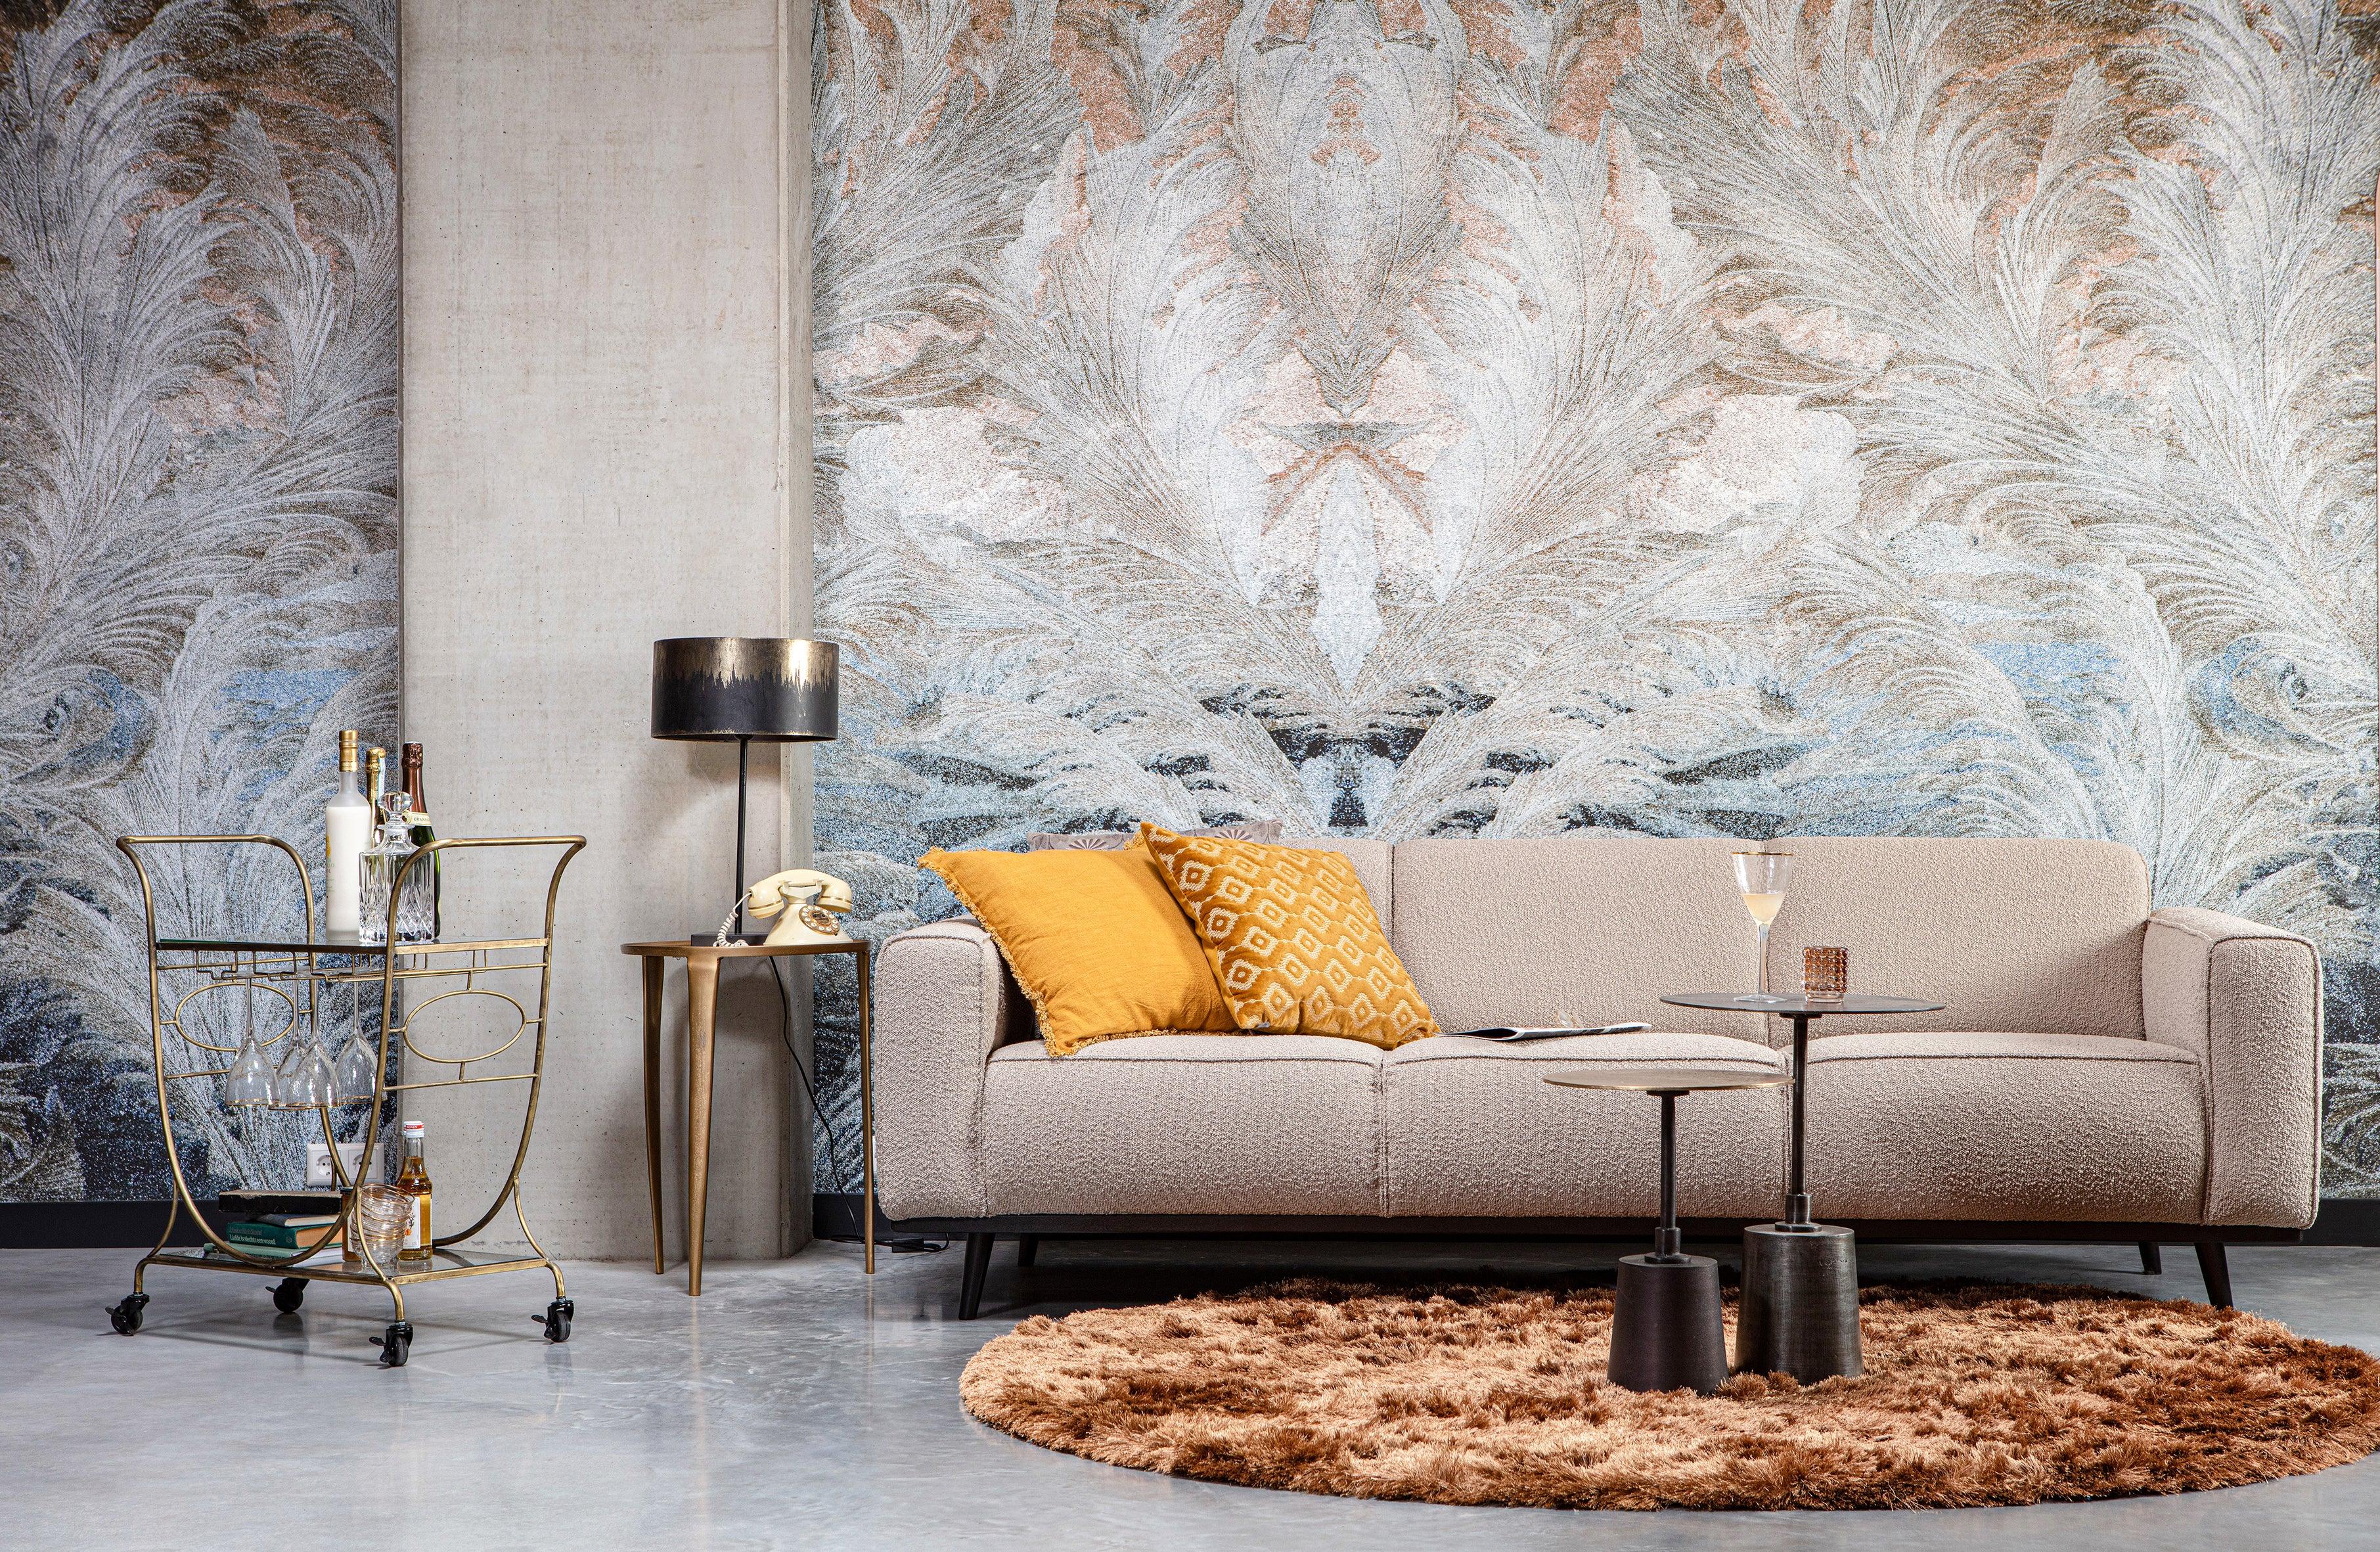 Sofa sztruksowa 3-osobowa STATEMENT brązowy Be Pure    Eye on Design